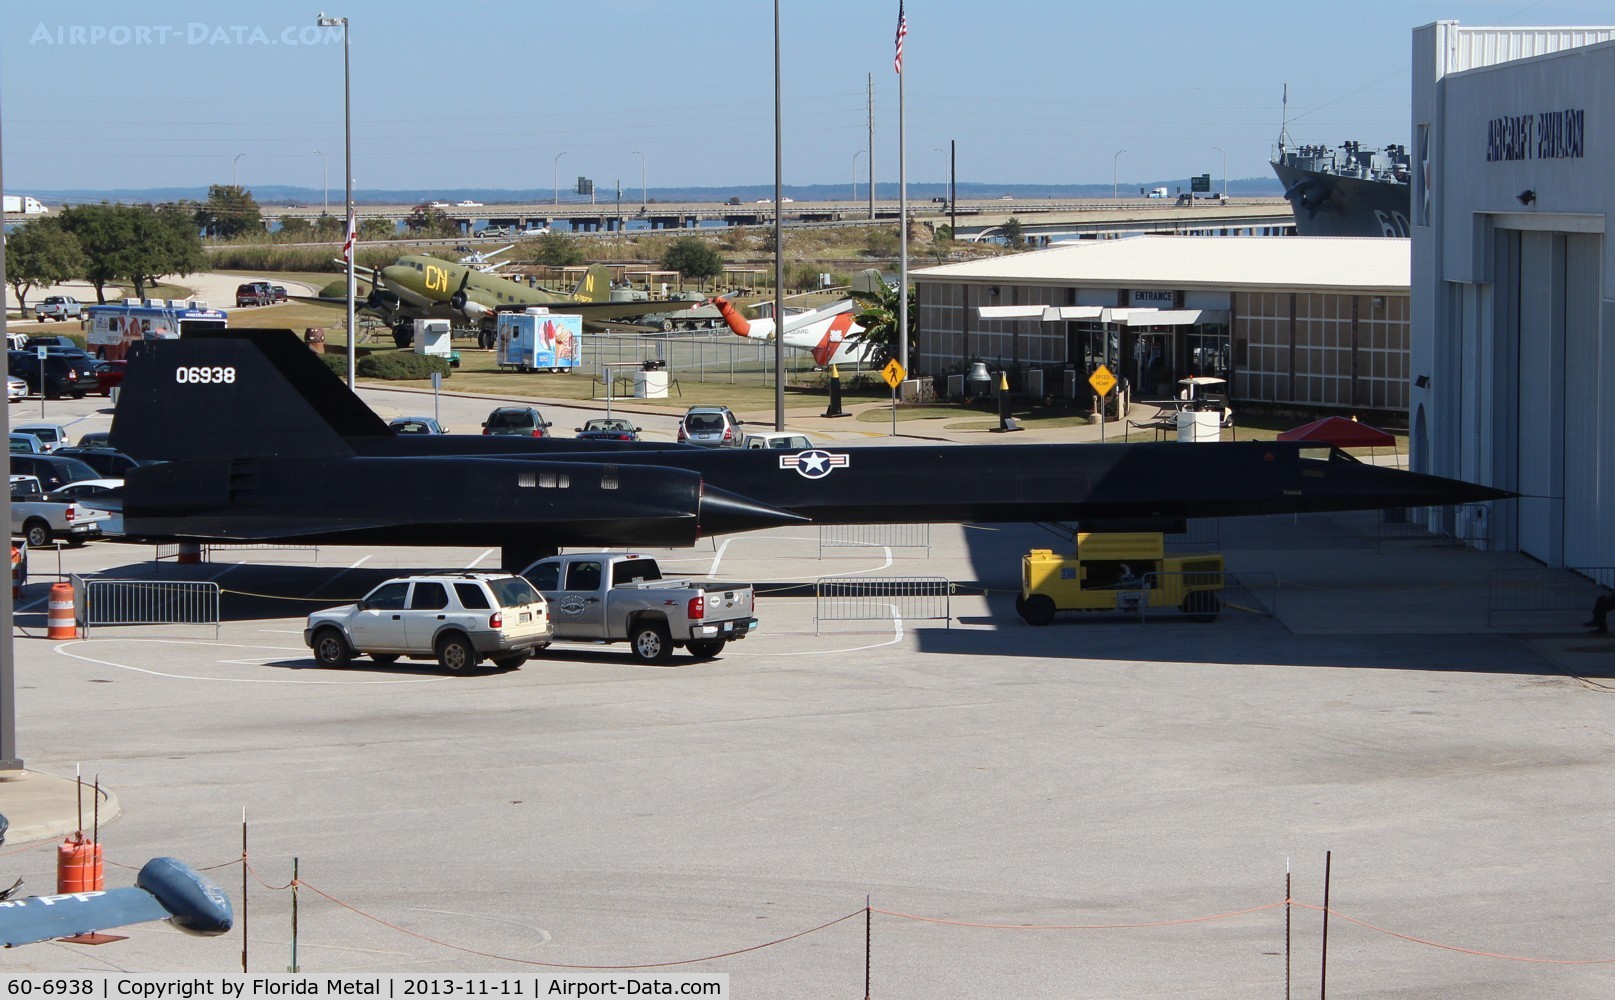 60-6938, 1962 Lockheed A-11 Blackbird C/N 132, Lockheed A-12 at Battleship Alabama